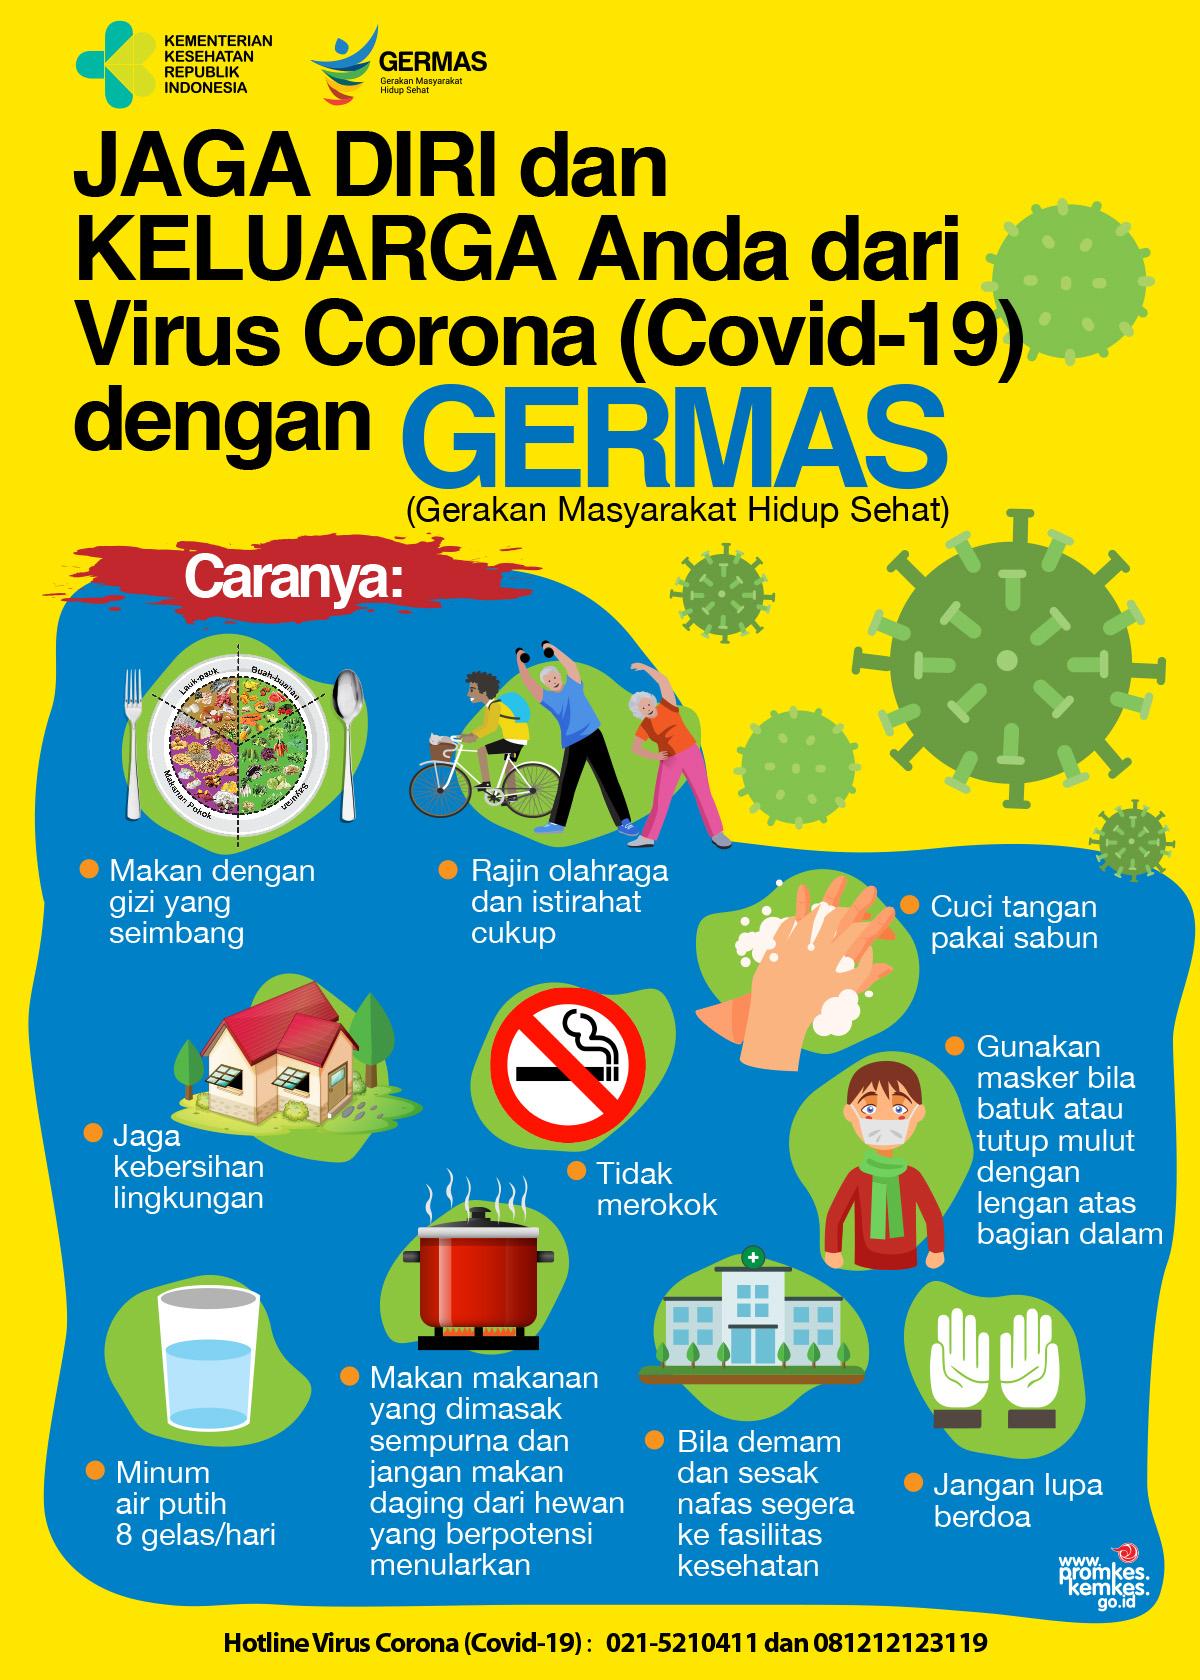  Poster  Corona  Kumpulan Gambar  Edukasi Virus Corona  Covid 